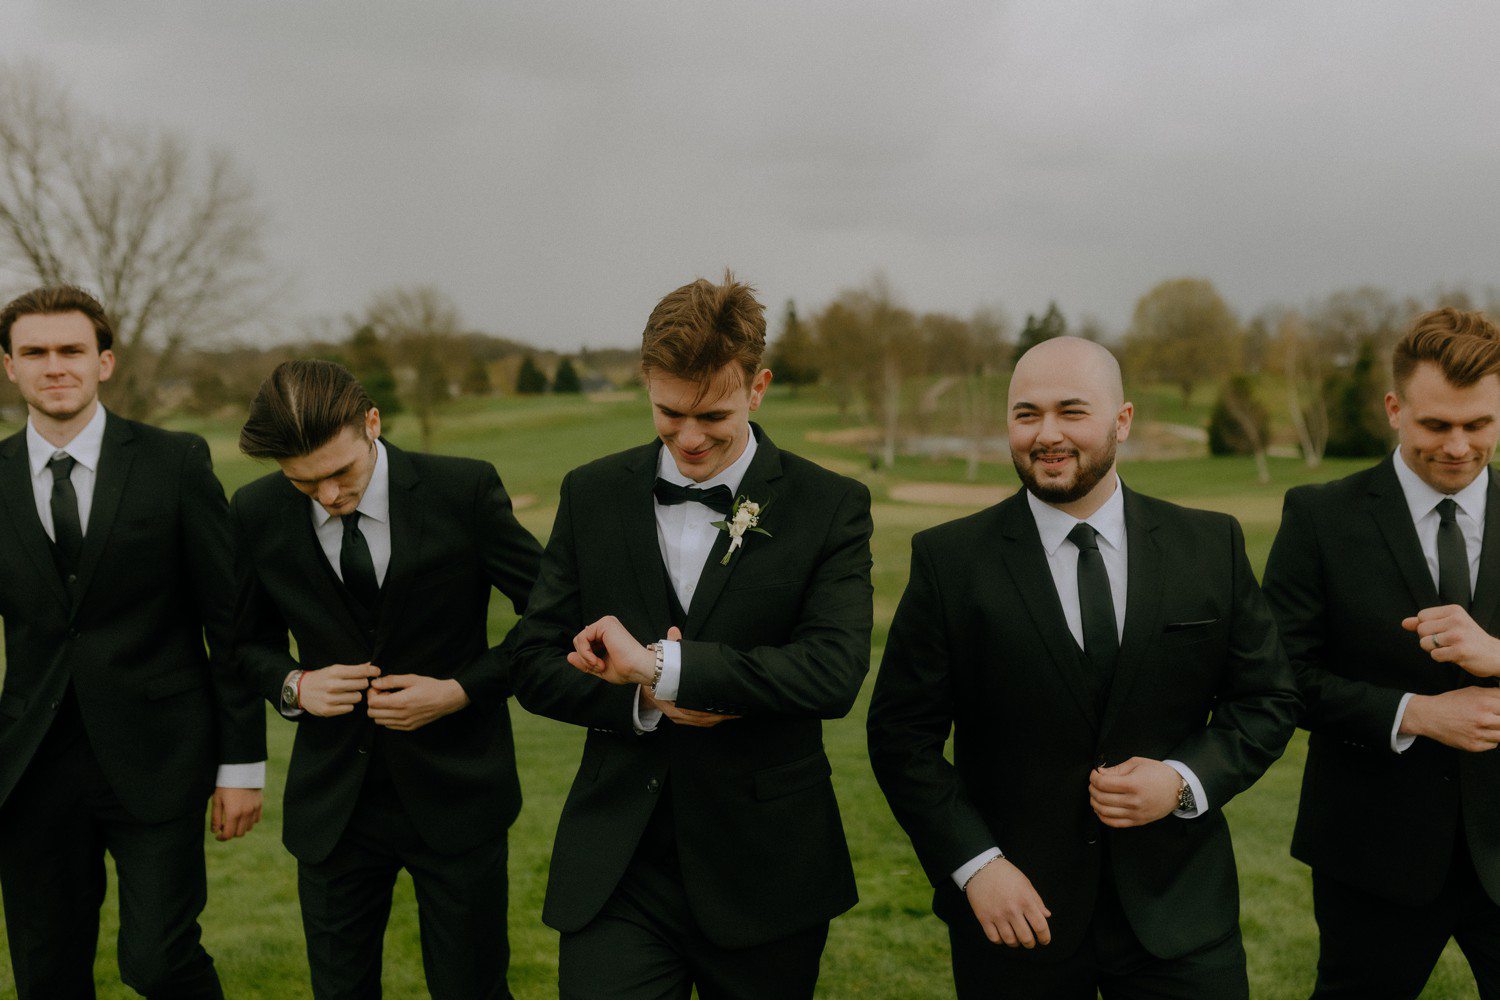 Groom walking with groomsmen in black suits. 